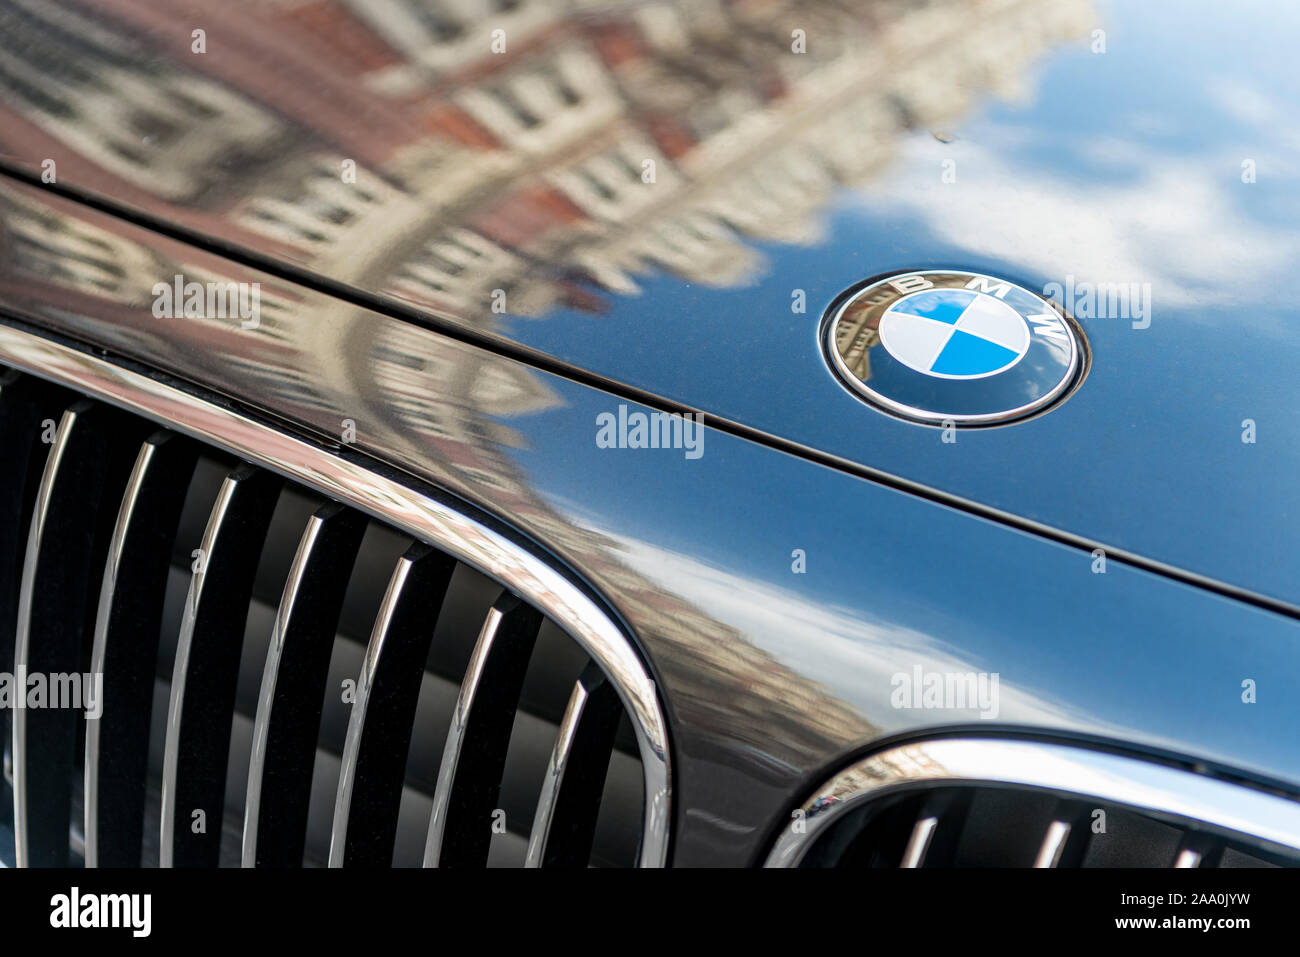 Primer plano de la insignia y la parrilla de un BMW coche de lujo en el oeste de Londres Foto de stock